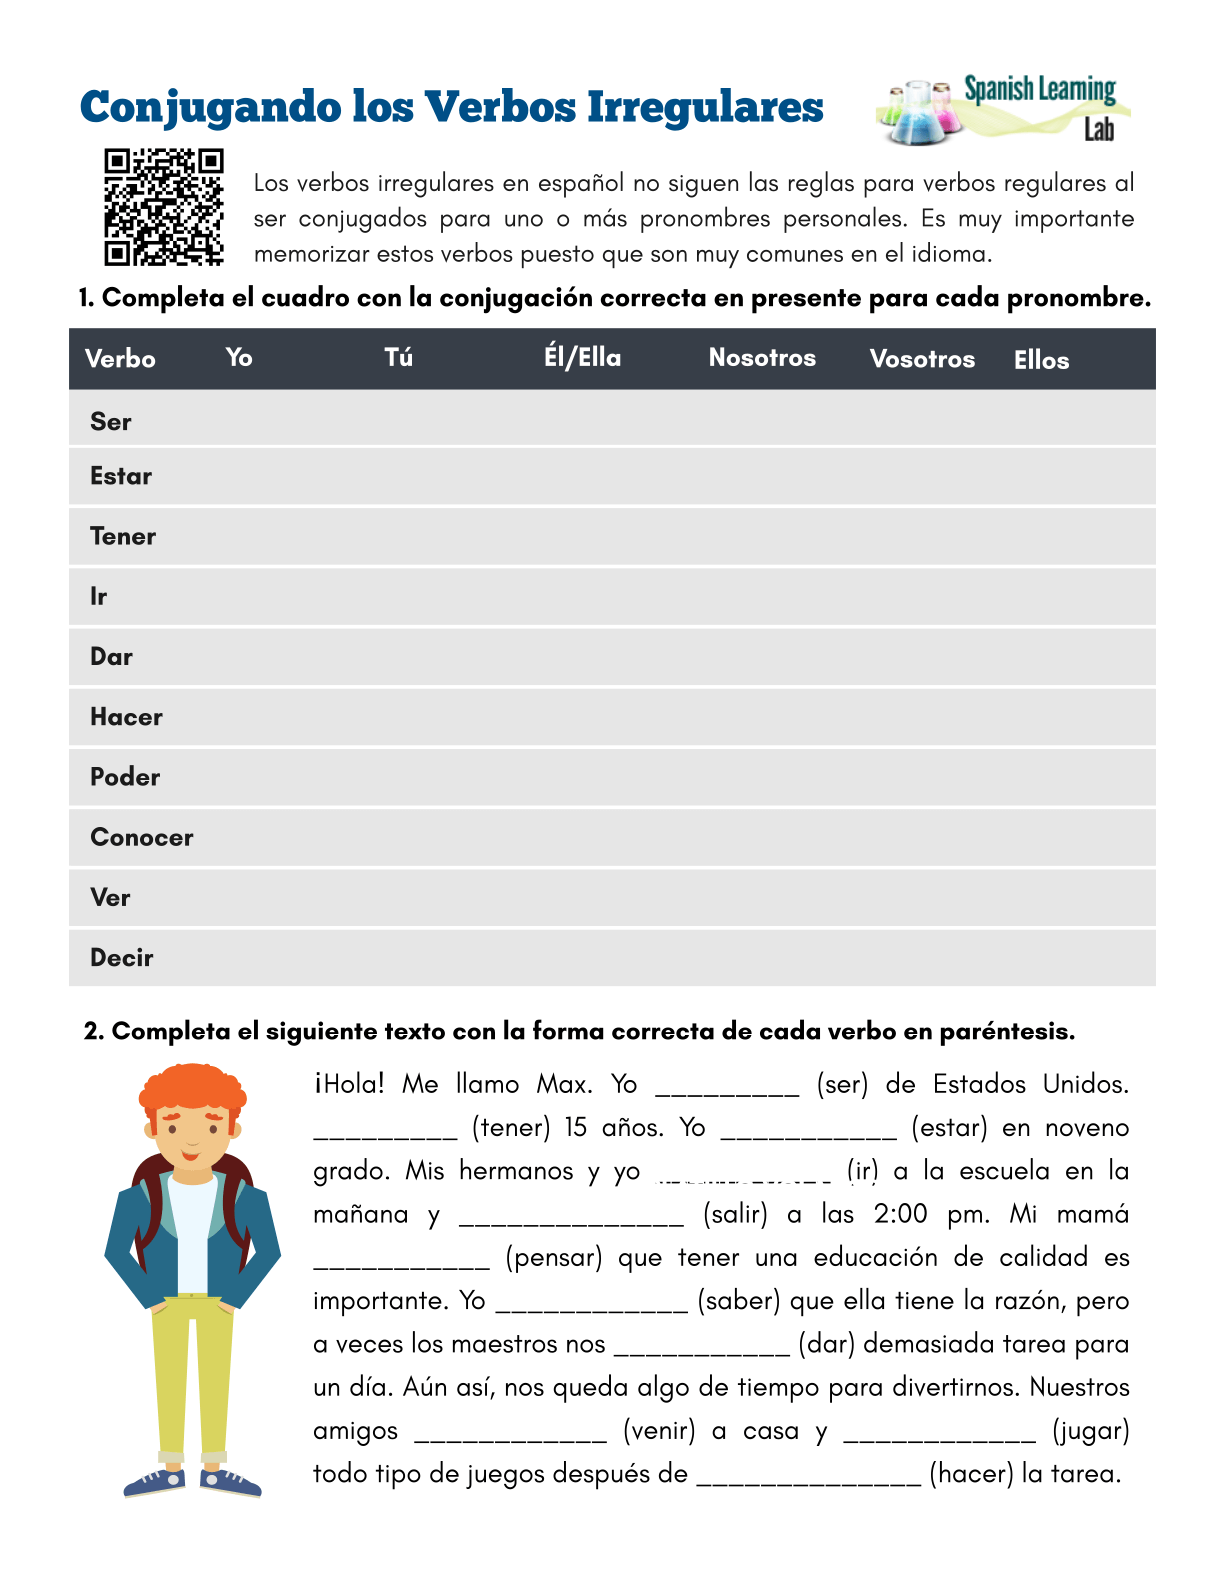 conjugando-los-verbos-irregulares-en-espa-ol-ejercicios-en-pdf-spanishlearninglab